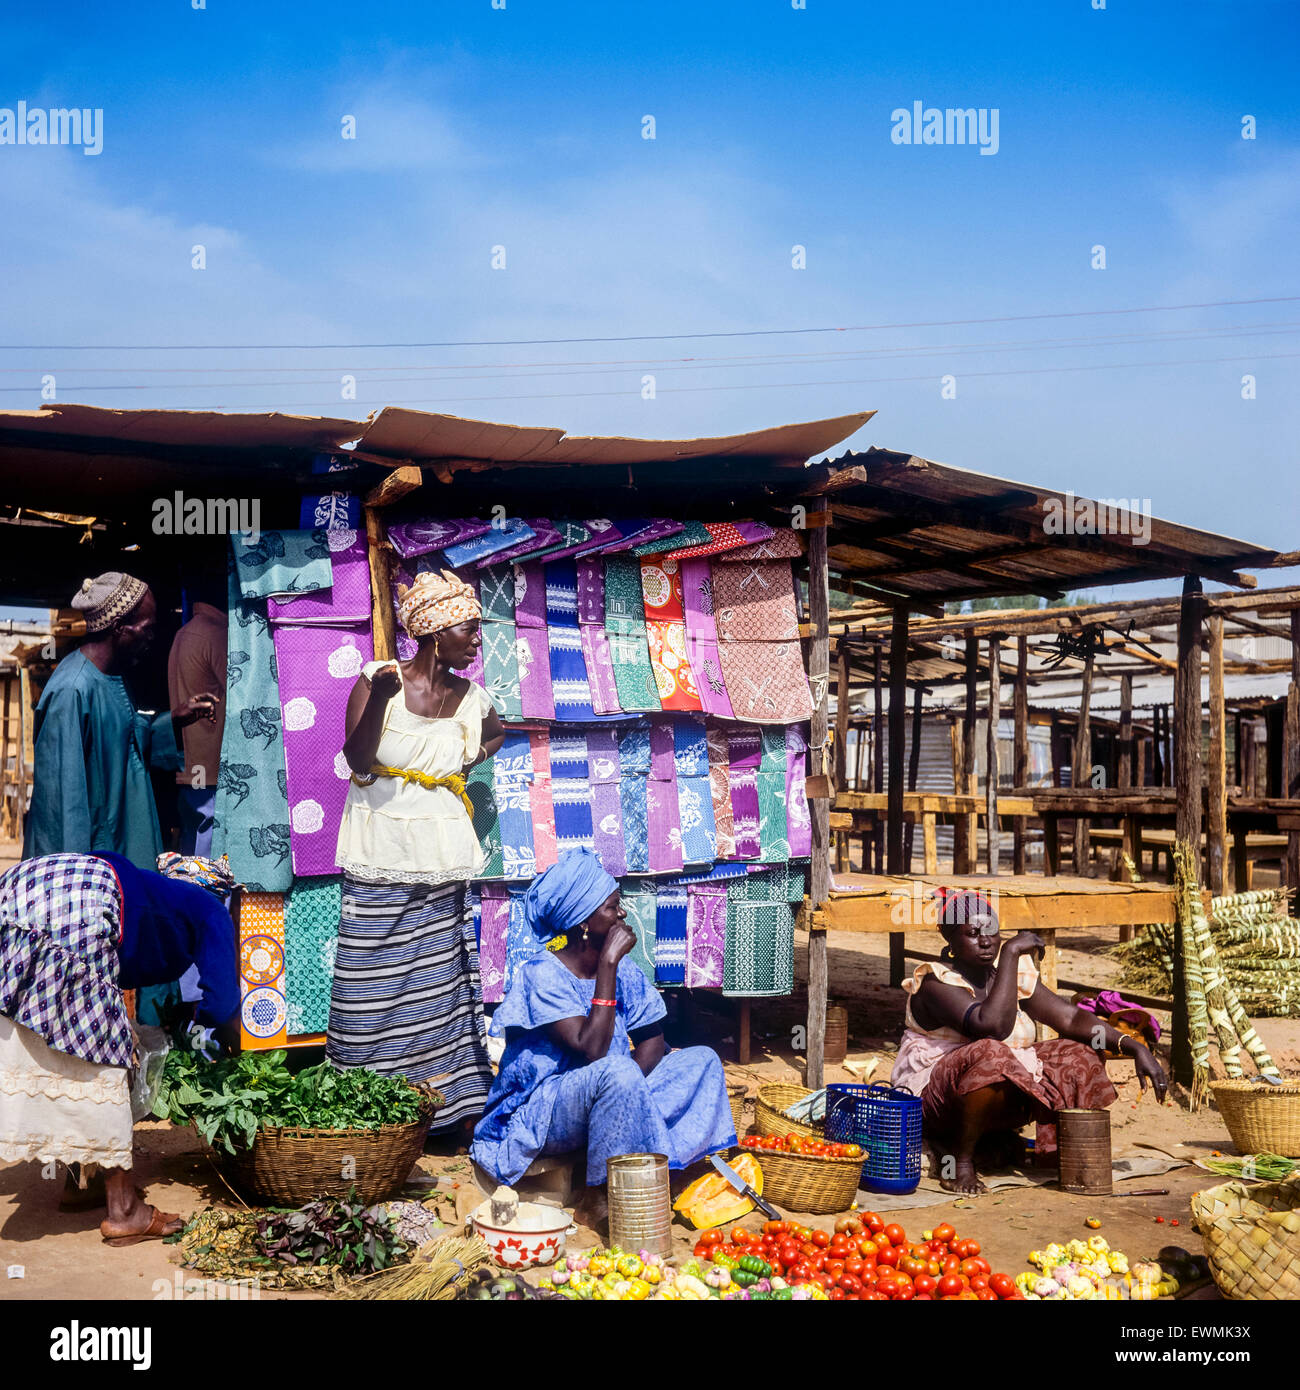 Les légumes et les marchands de linge de maison, Royal Albert marché, Banjul, Gambie, Afrique de l'Ouest Banque D'Images